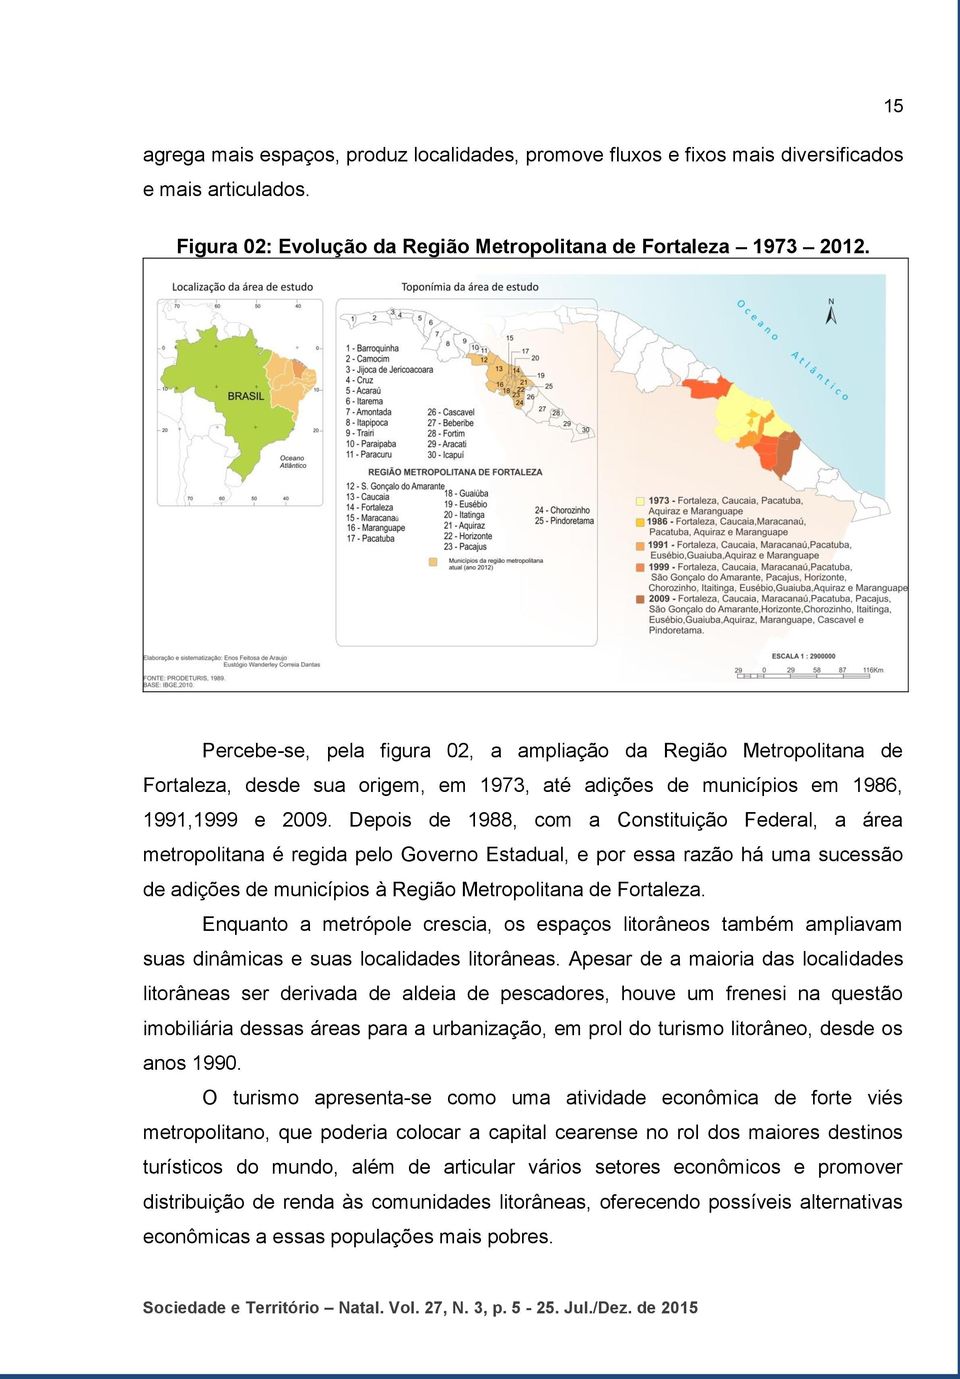 Depois de 1988, com a Constituição Federal, a área metropolitana é regida pelo Governo Estadual, e por essa razão há uma sucessão de adições de municípios à Região Metropolitana de Fortaleza.